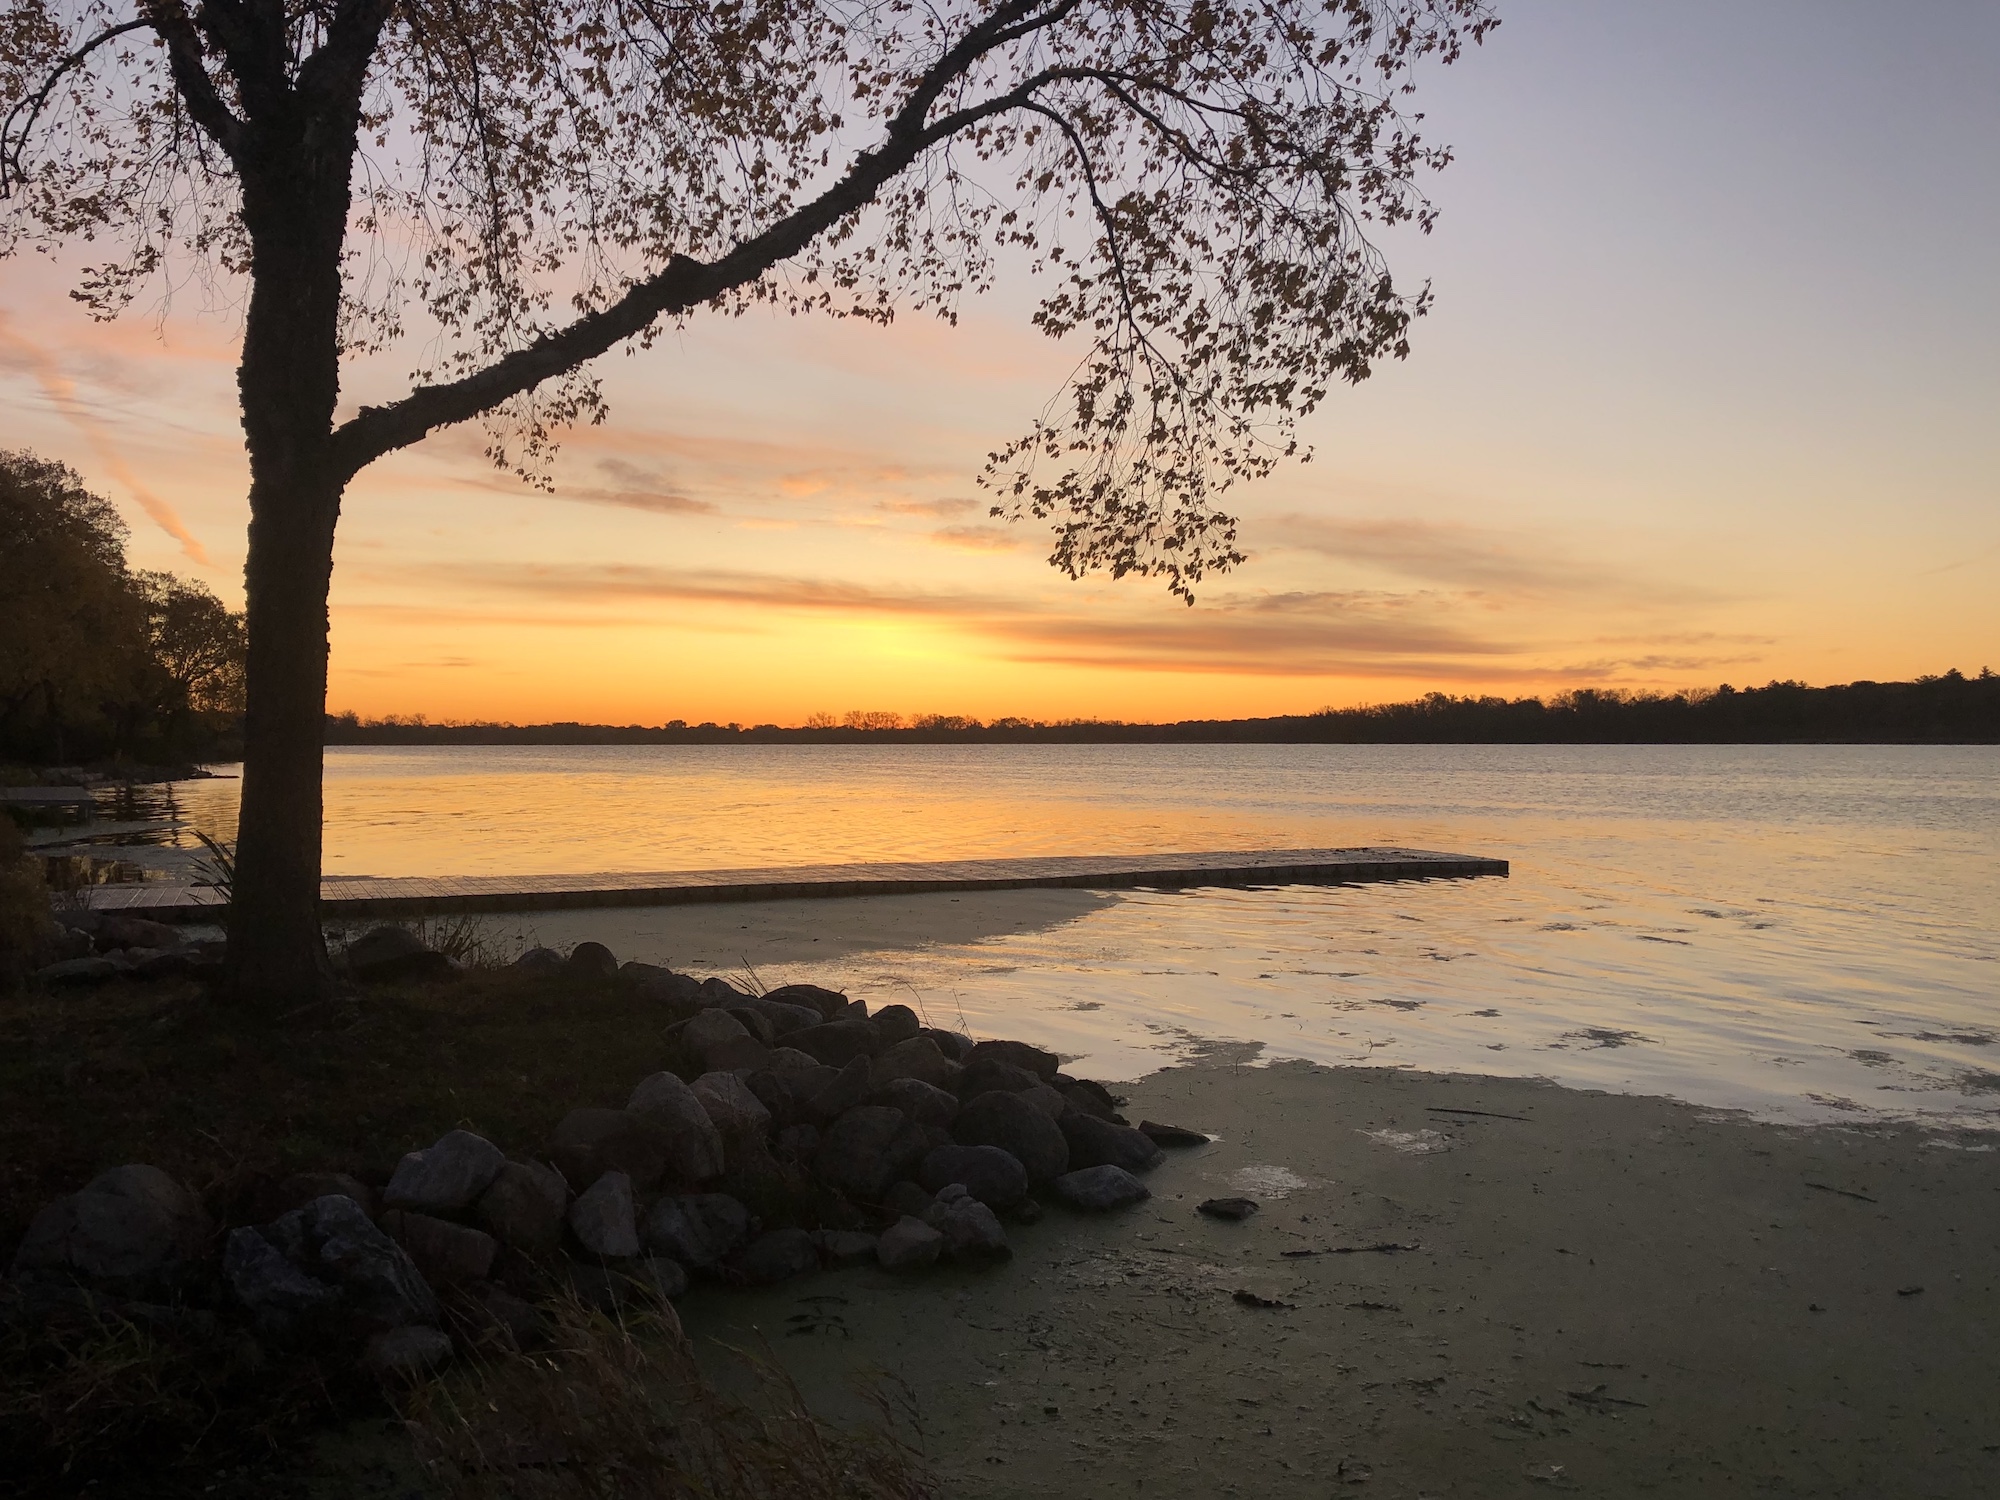 Lake Wingra on October 23, 2019.